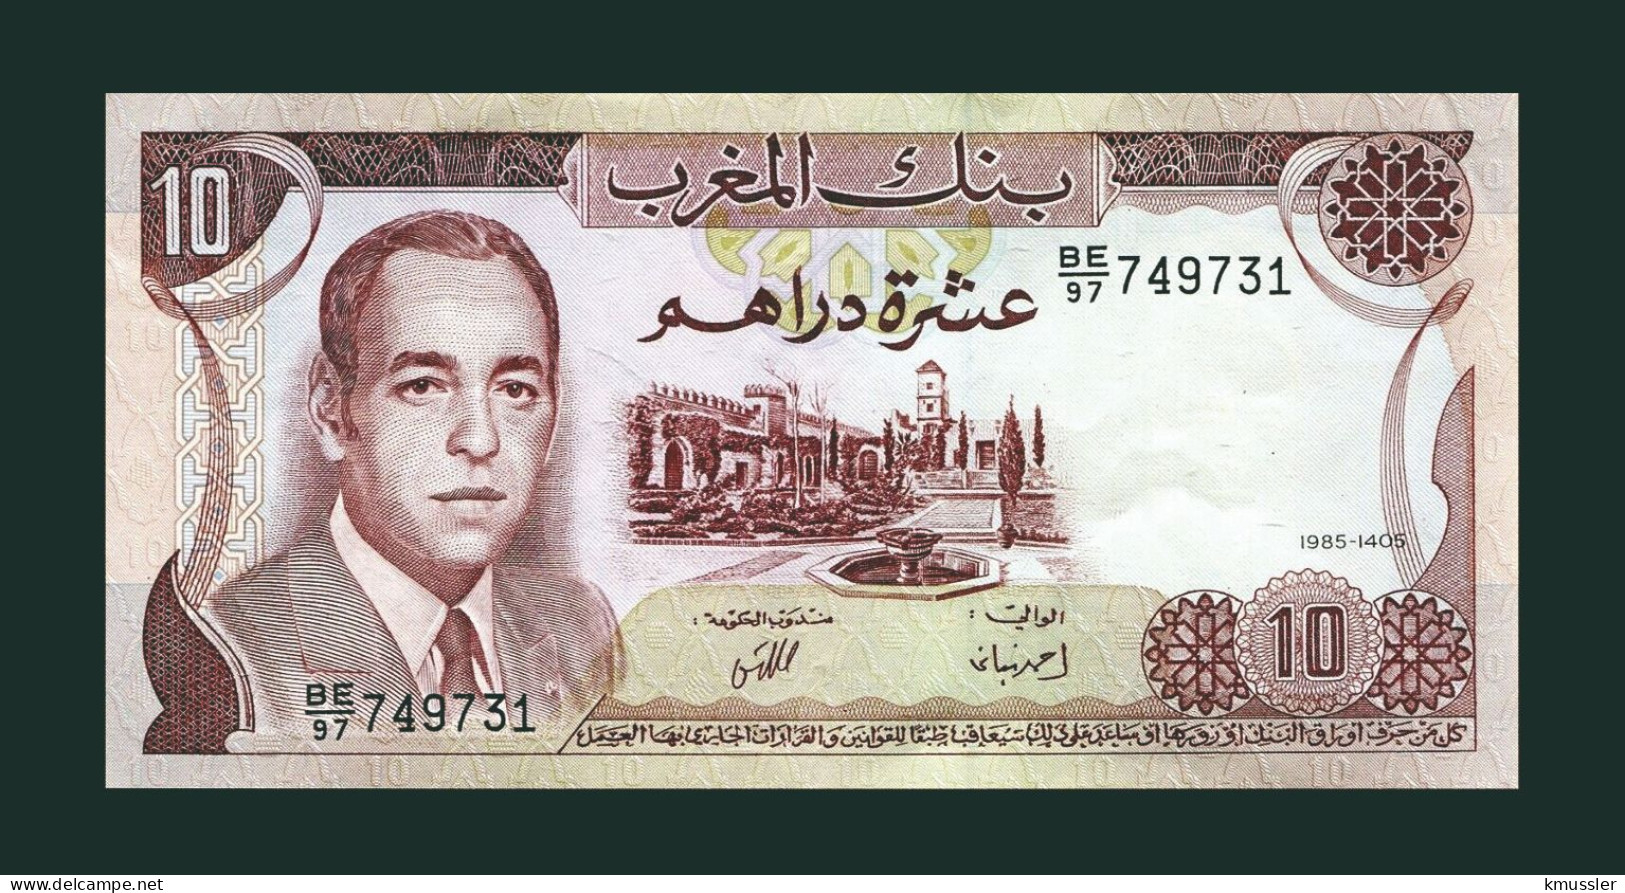 # # # Banknote Marokko (Morocco) 10 Dirham 1985 (P-57) UNC # # # - Maroc